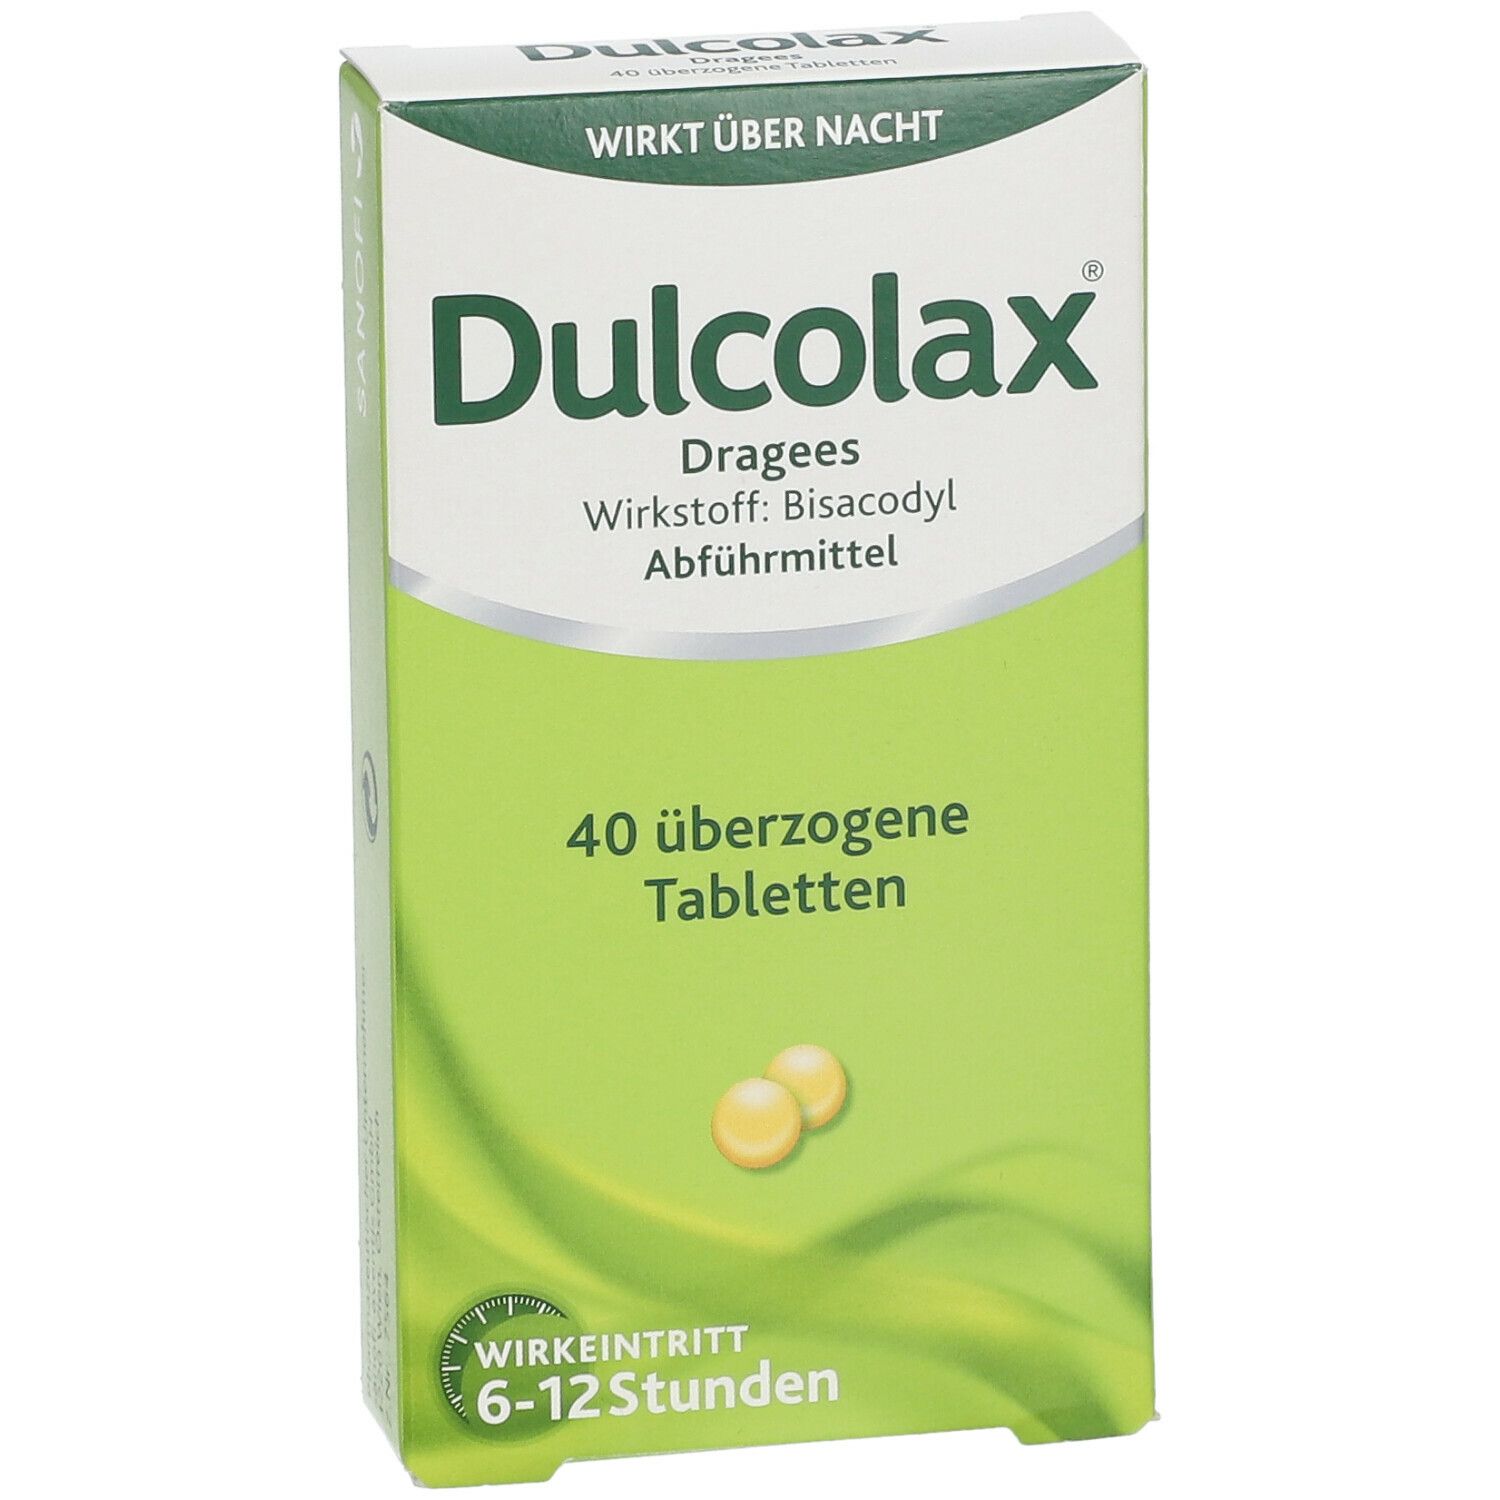 Dulcolax® Dragees befreien bei Verstopfung über Nacht